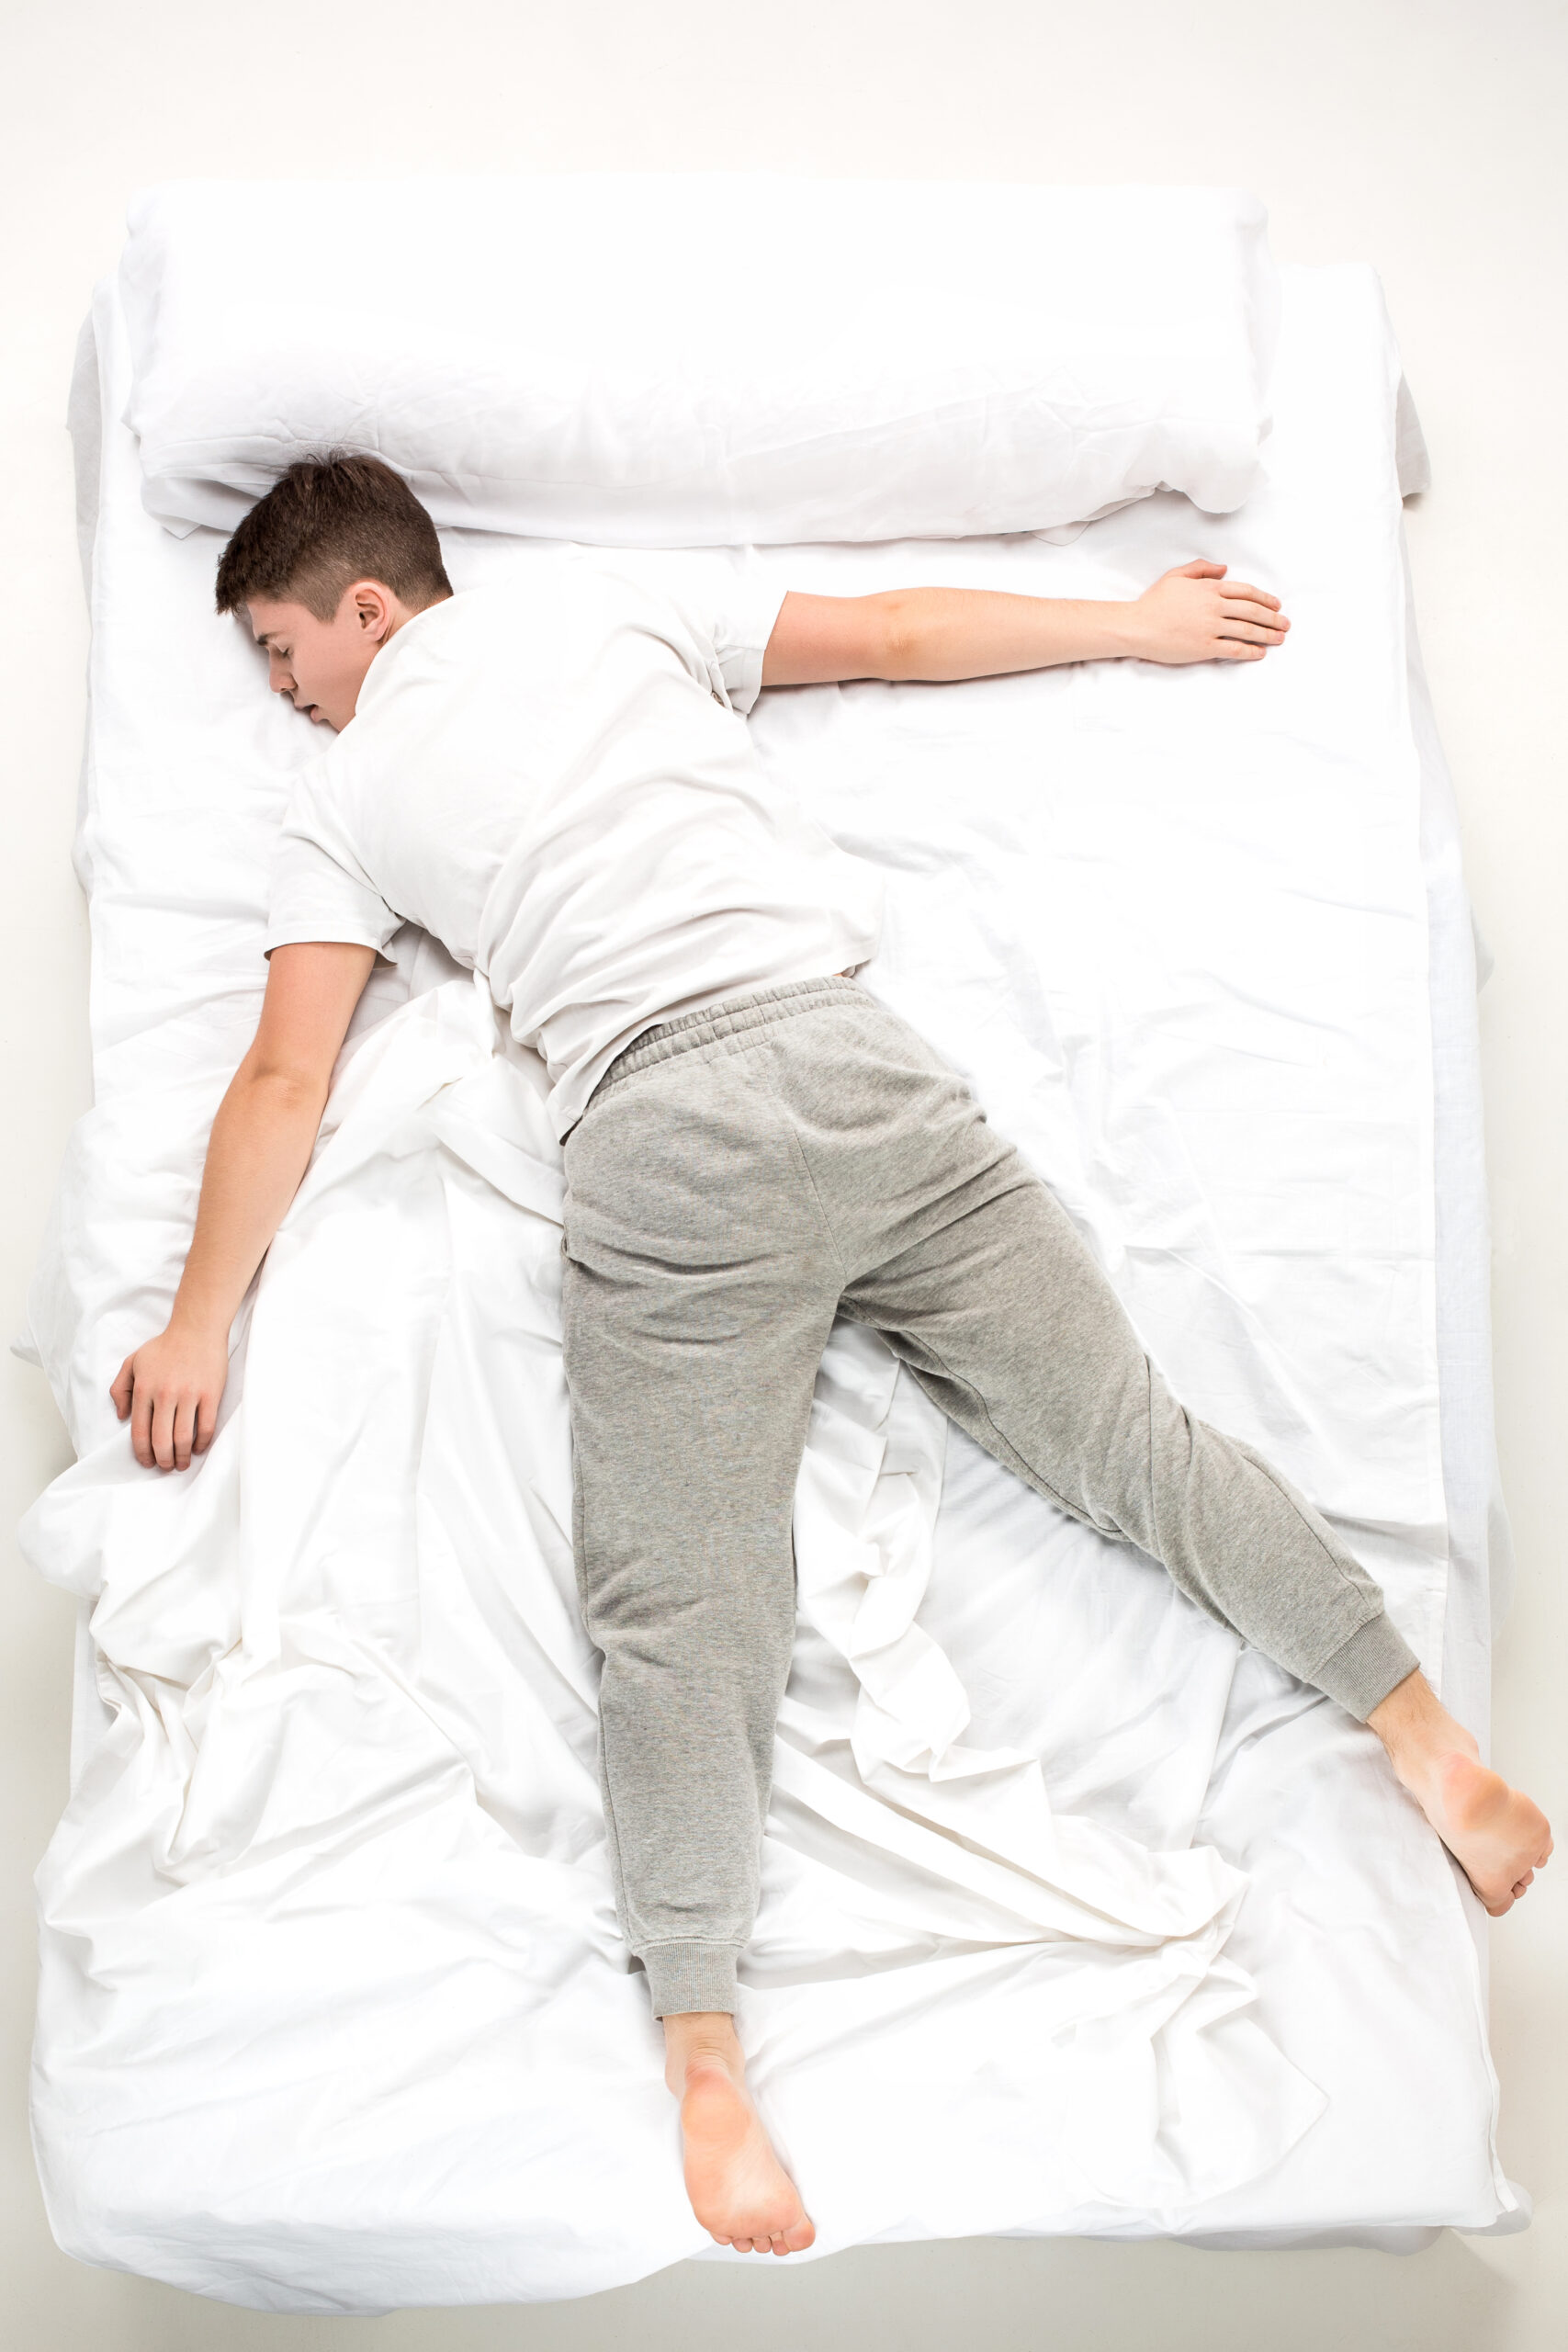 นอนผิดท่าอันตราย ส่งผลร้ายต่อสุขภาพ_1